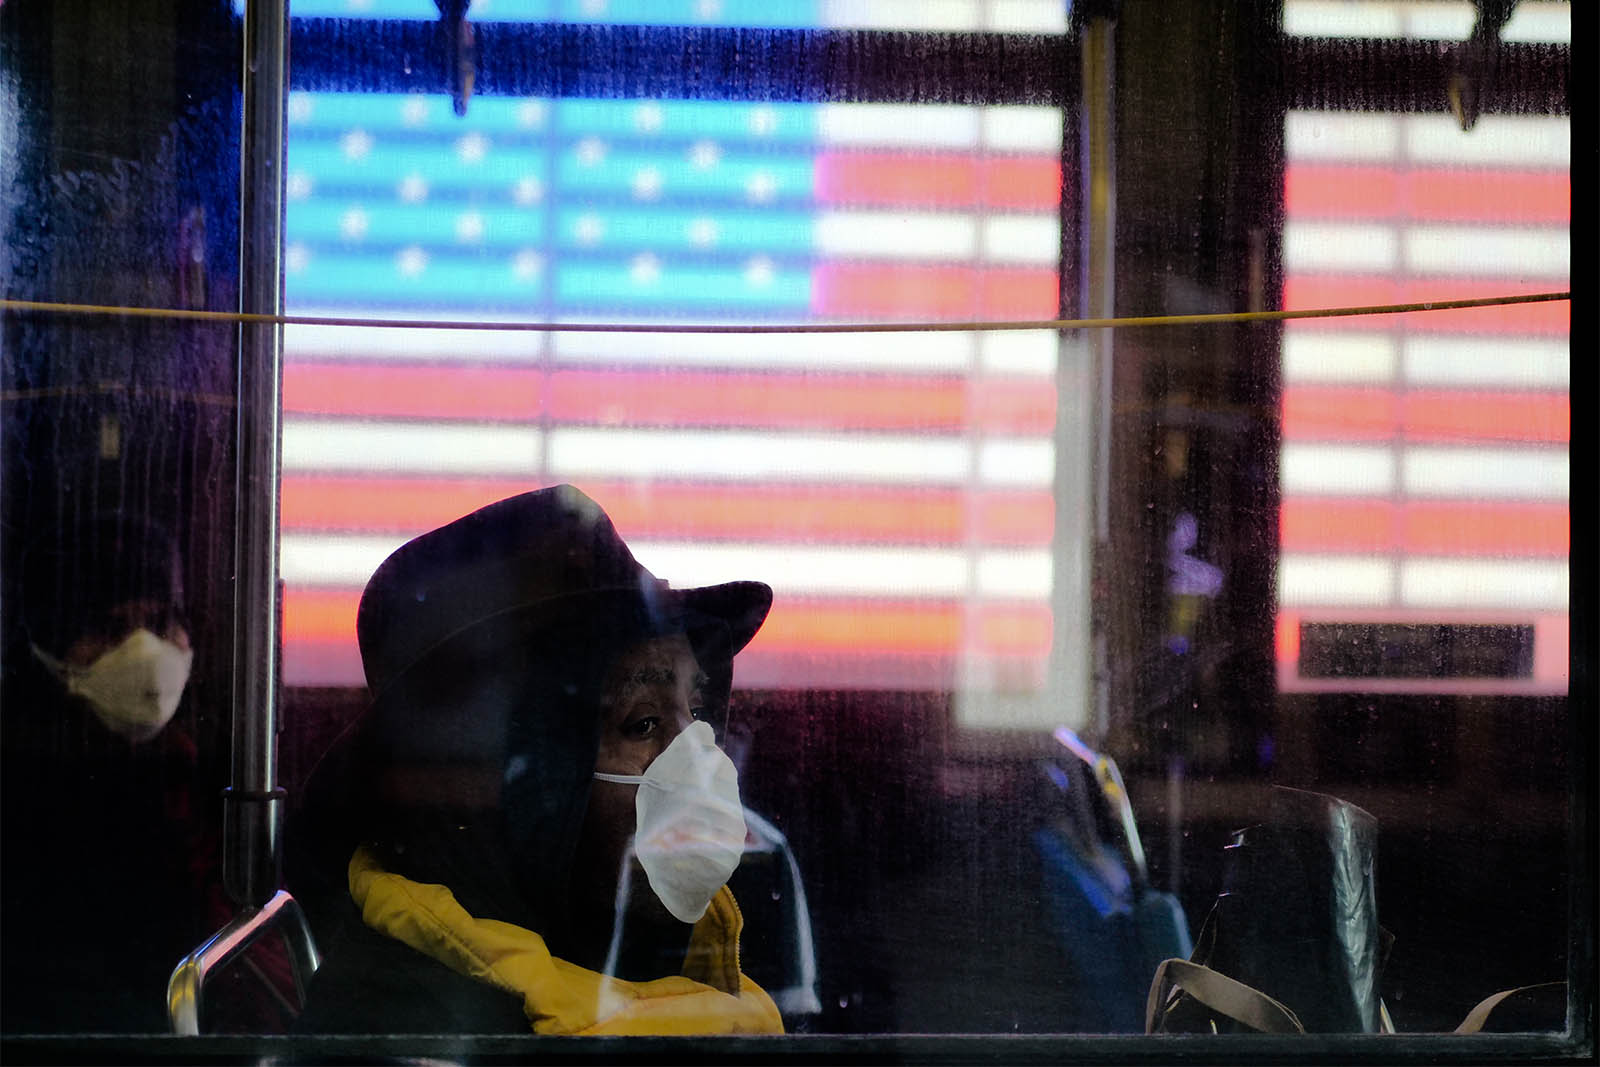 אישה נוסעת באוטובוס בניו יורק בזמן מגפת הקורונה. 24 במרץ (צילום: Kevin Benckendorf / Shutterstock.com)